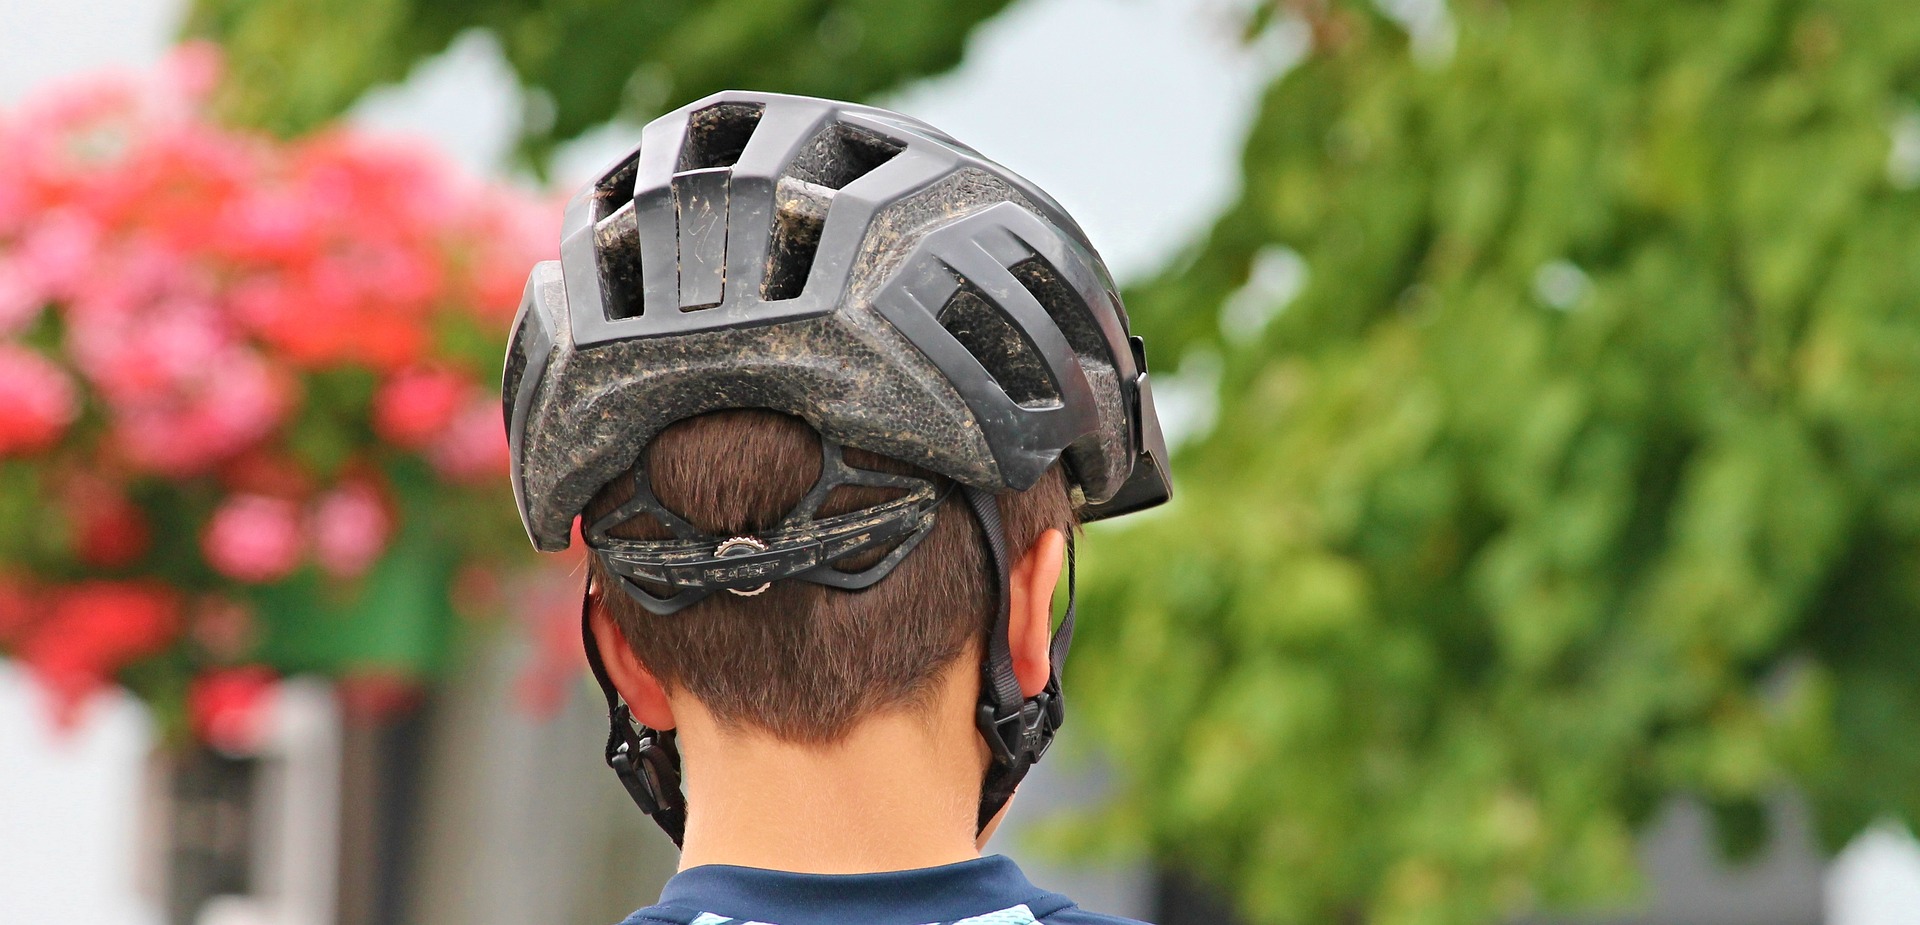 Boy wearing a bike helmet